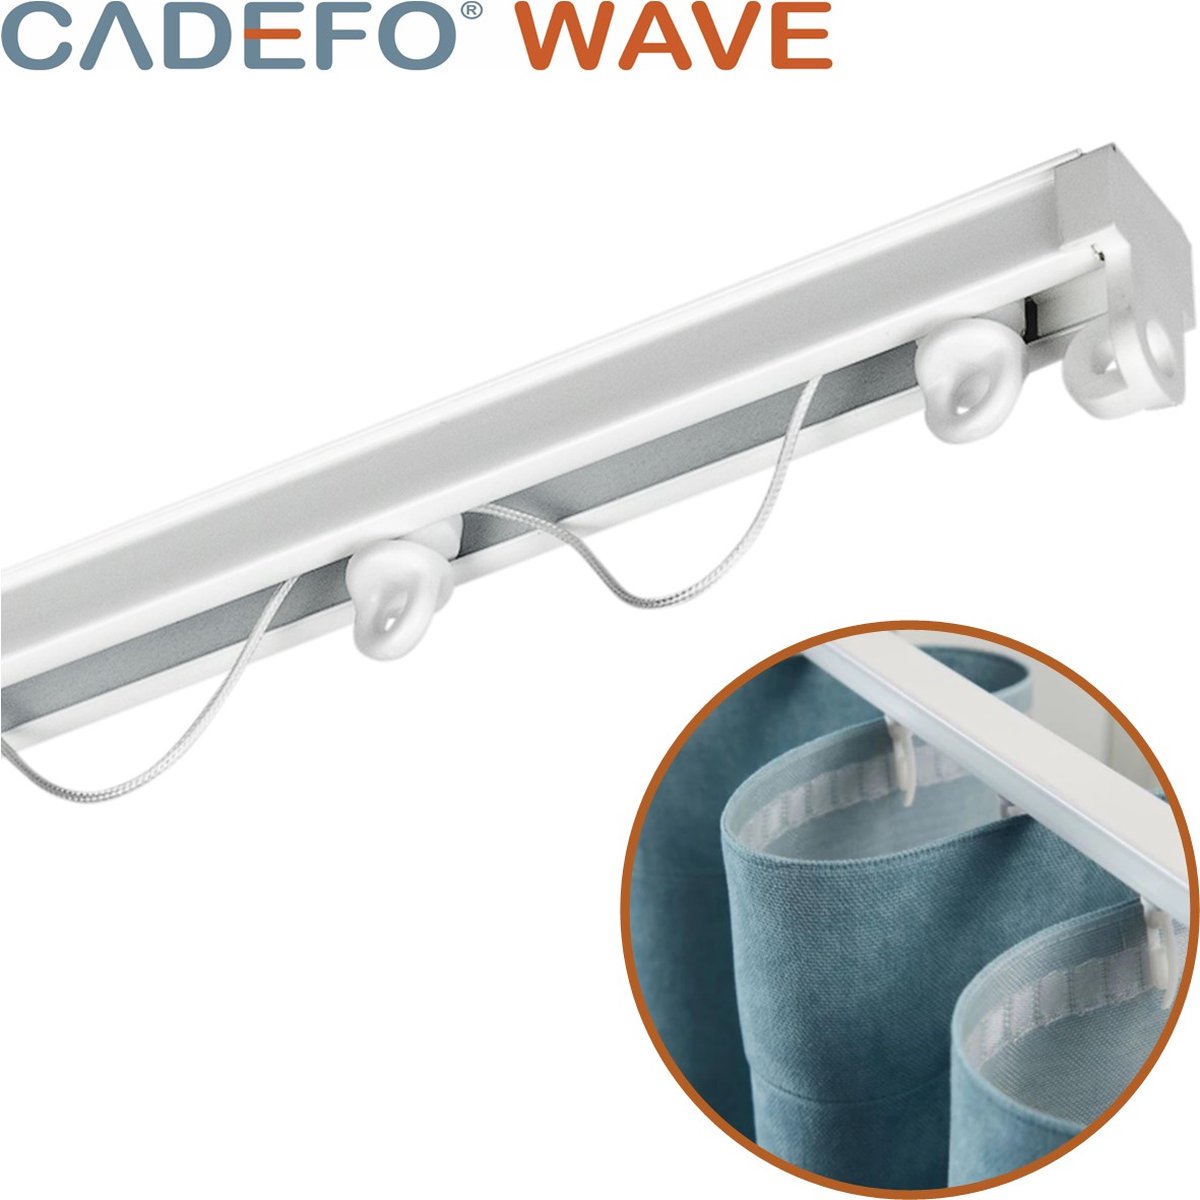 CADEFO WAVE (501 - 550 cm) Gordijnrails - Compleet op maat! - UIT 1 STUK - Leverbaar tot 6 meter - Plafondbevestiging - Lengte 534 cm